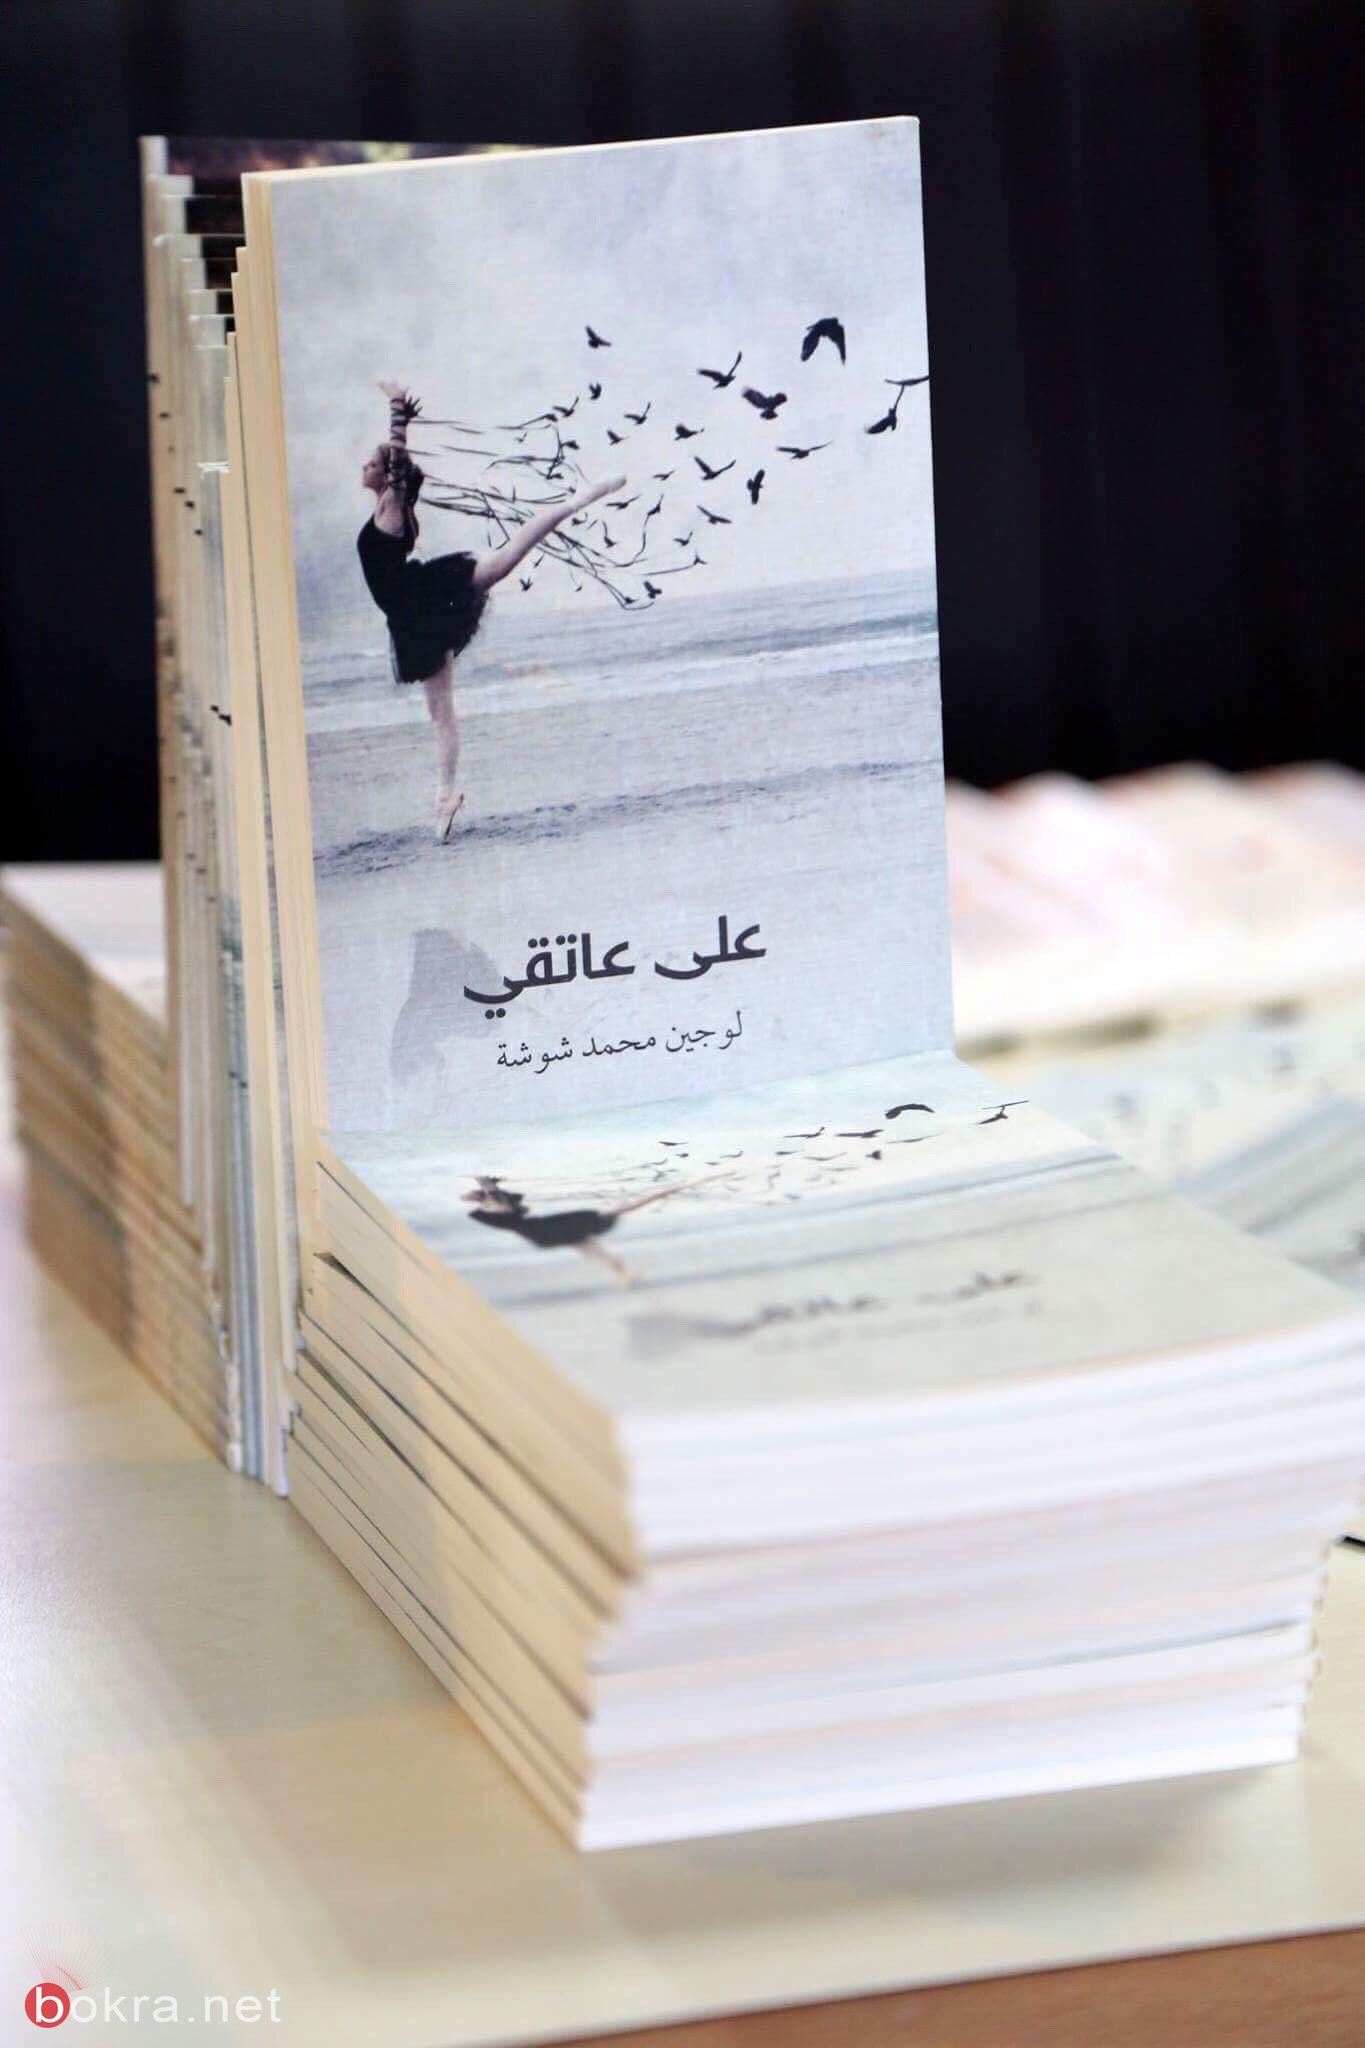 لُجين شوشة، كاتبة واعدة أصدرت كتابين رغم انها تلميذة في مدرسة-3